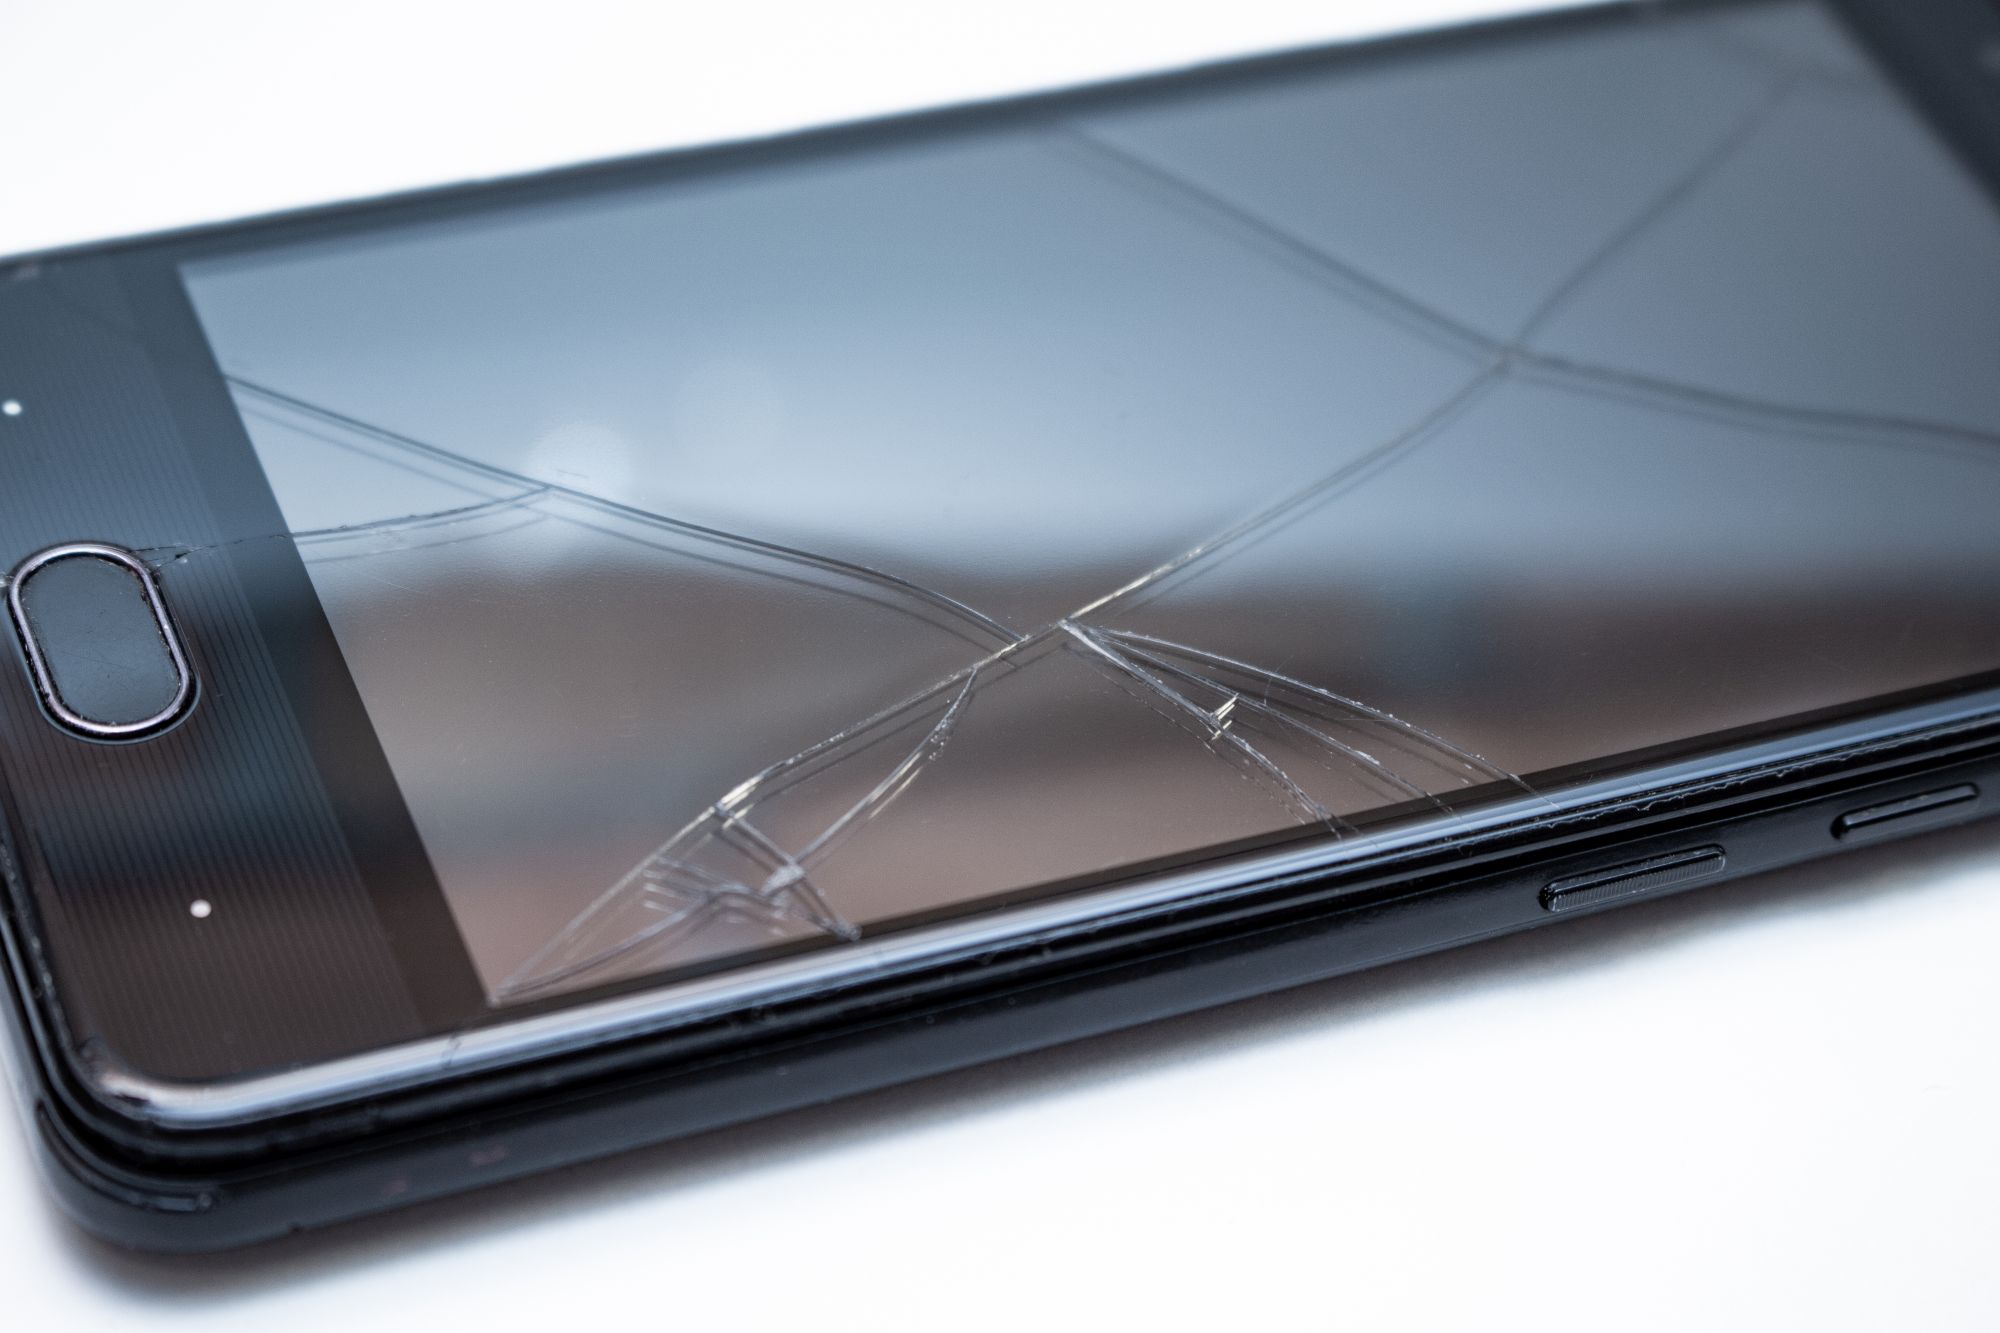 Uszkodzony telefon kupiony na Allegro, sprzedawca przerzuca winę na konsumenta